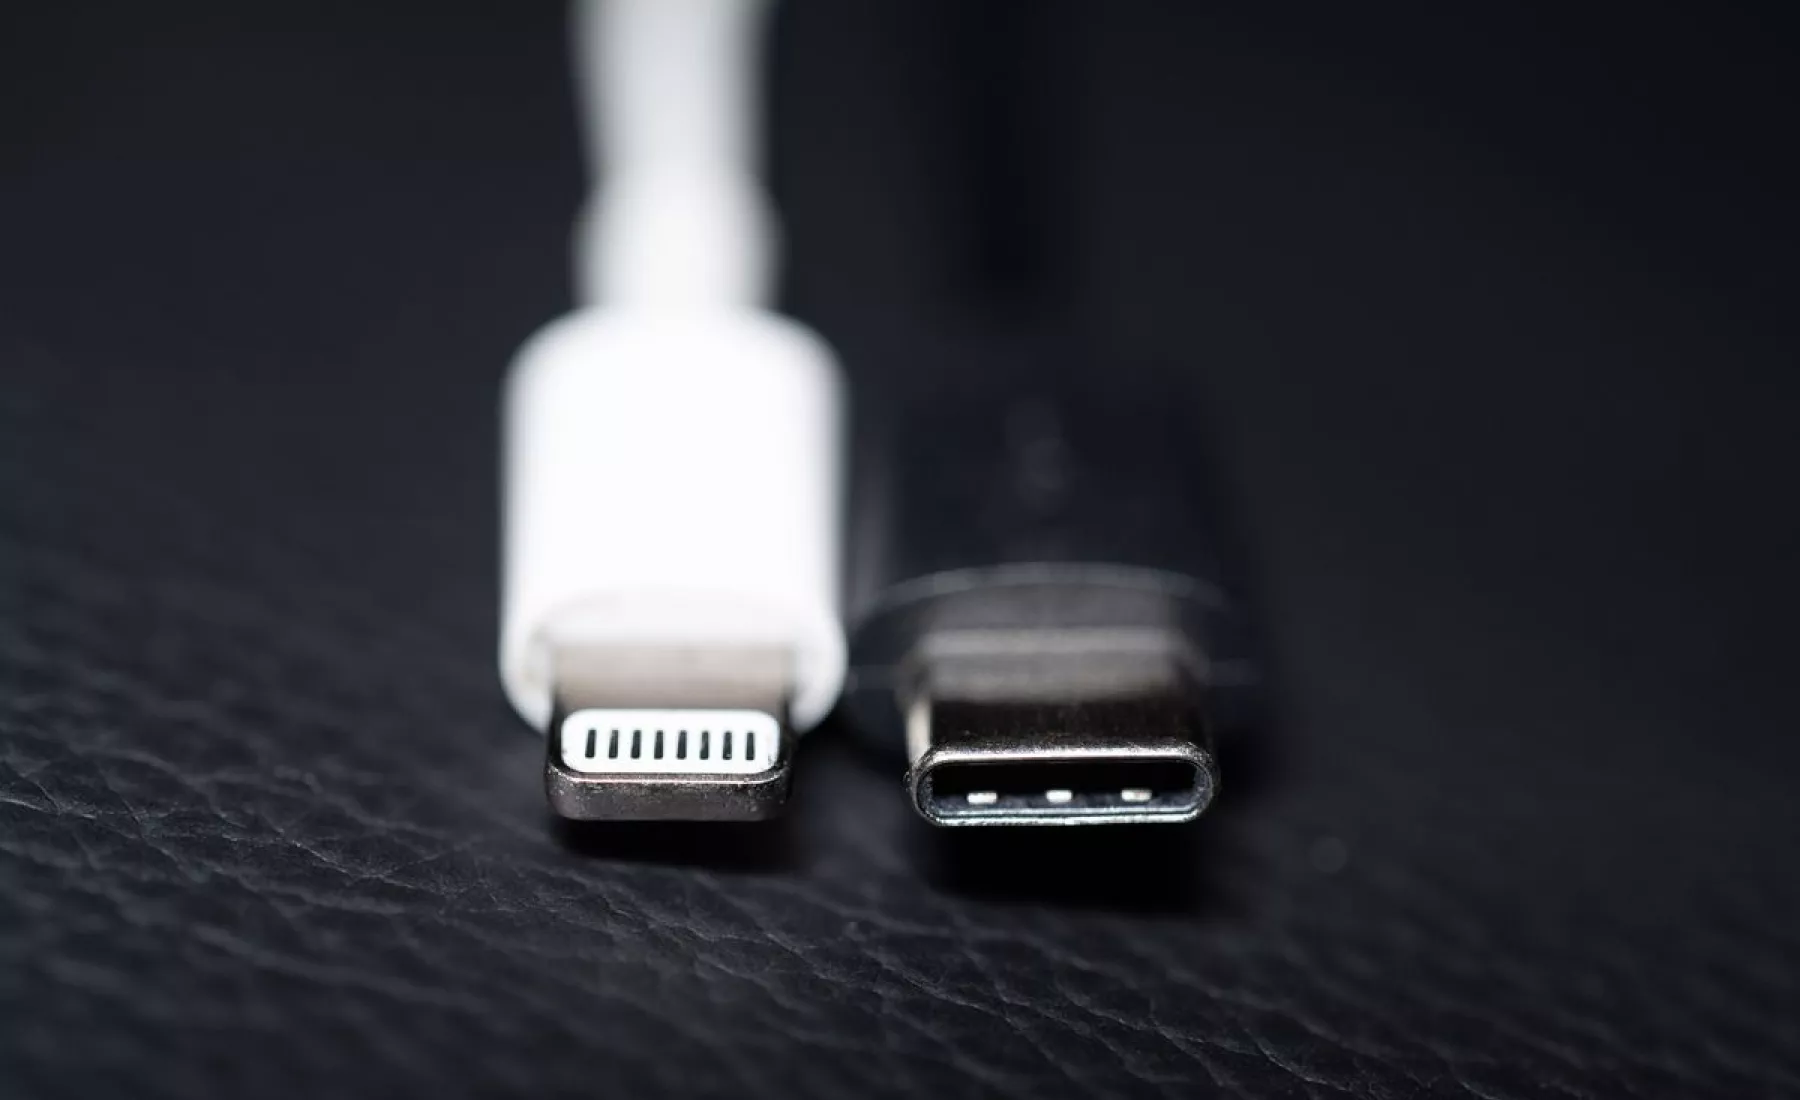 Ein Apple Lightning Ladestecker (l) ist neben einem USB-C Ladestecker zu sehen